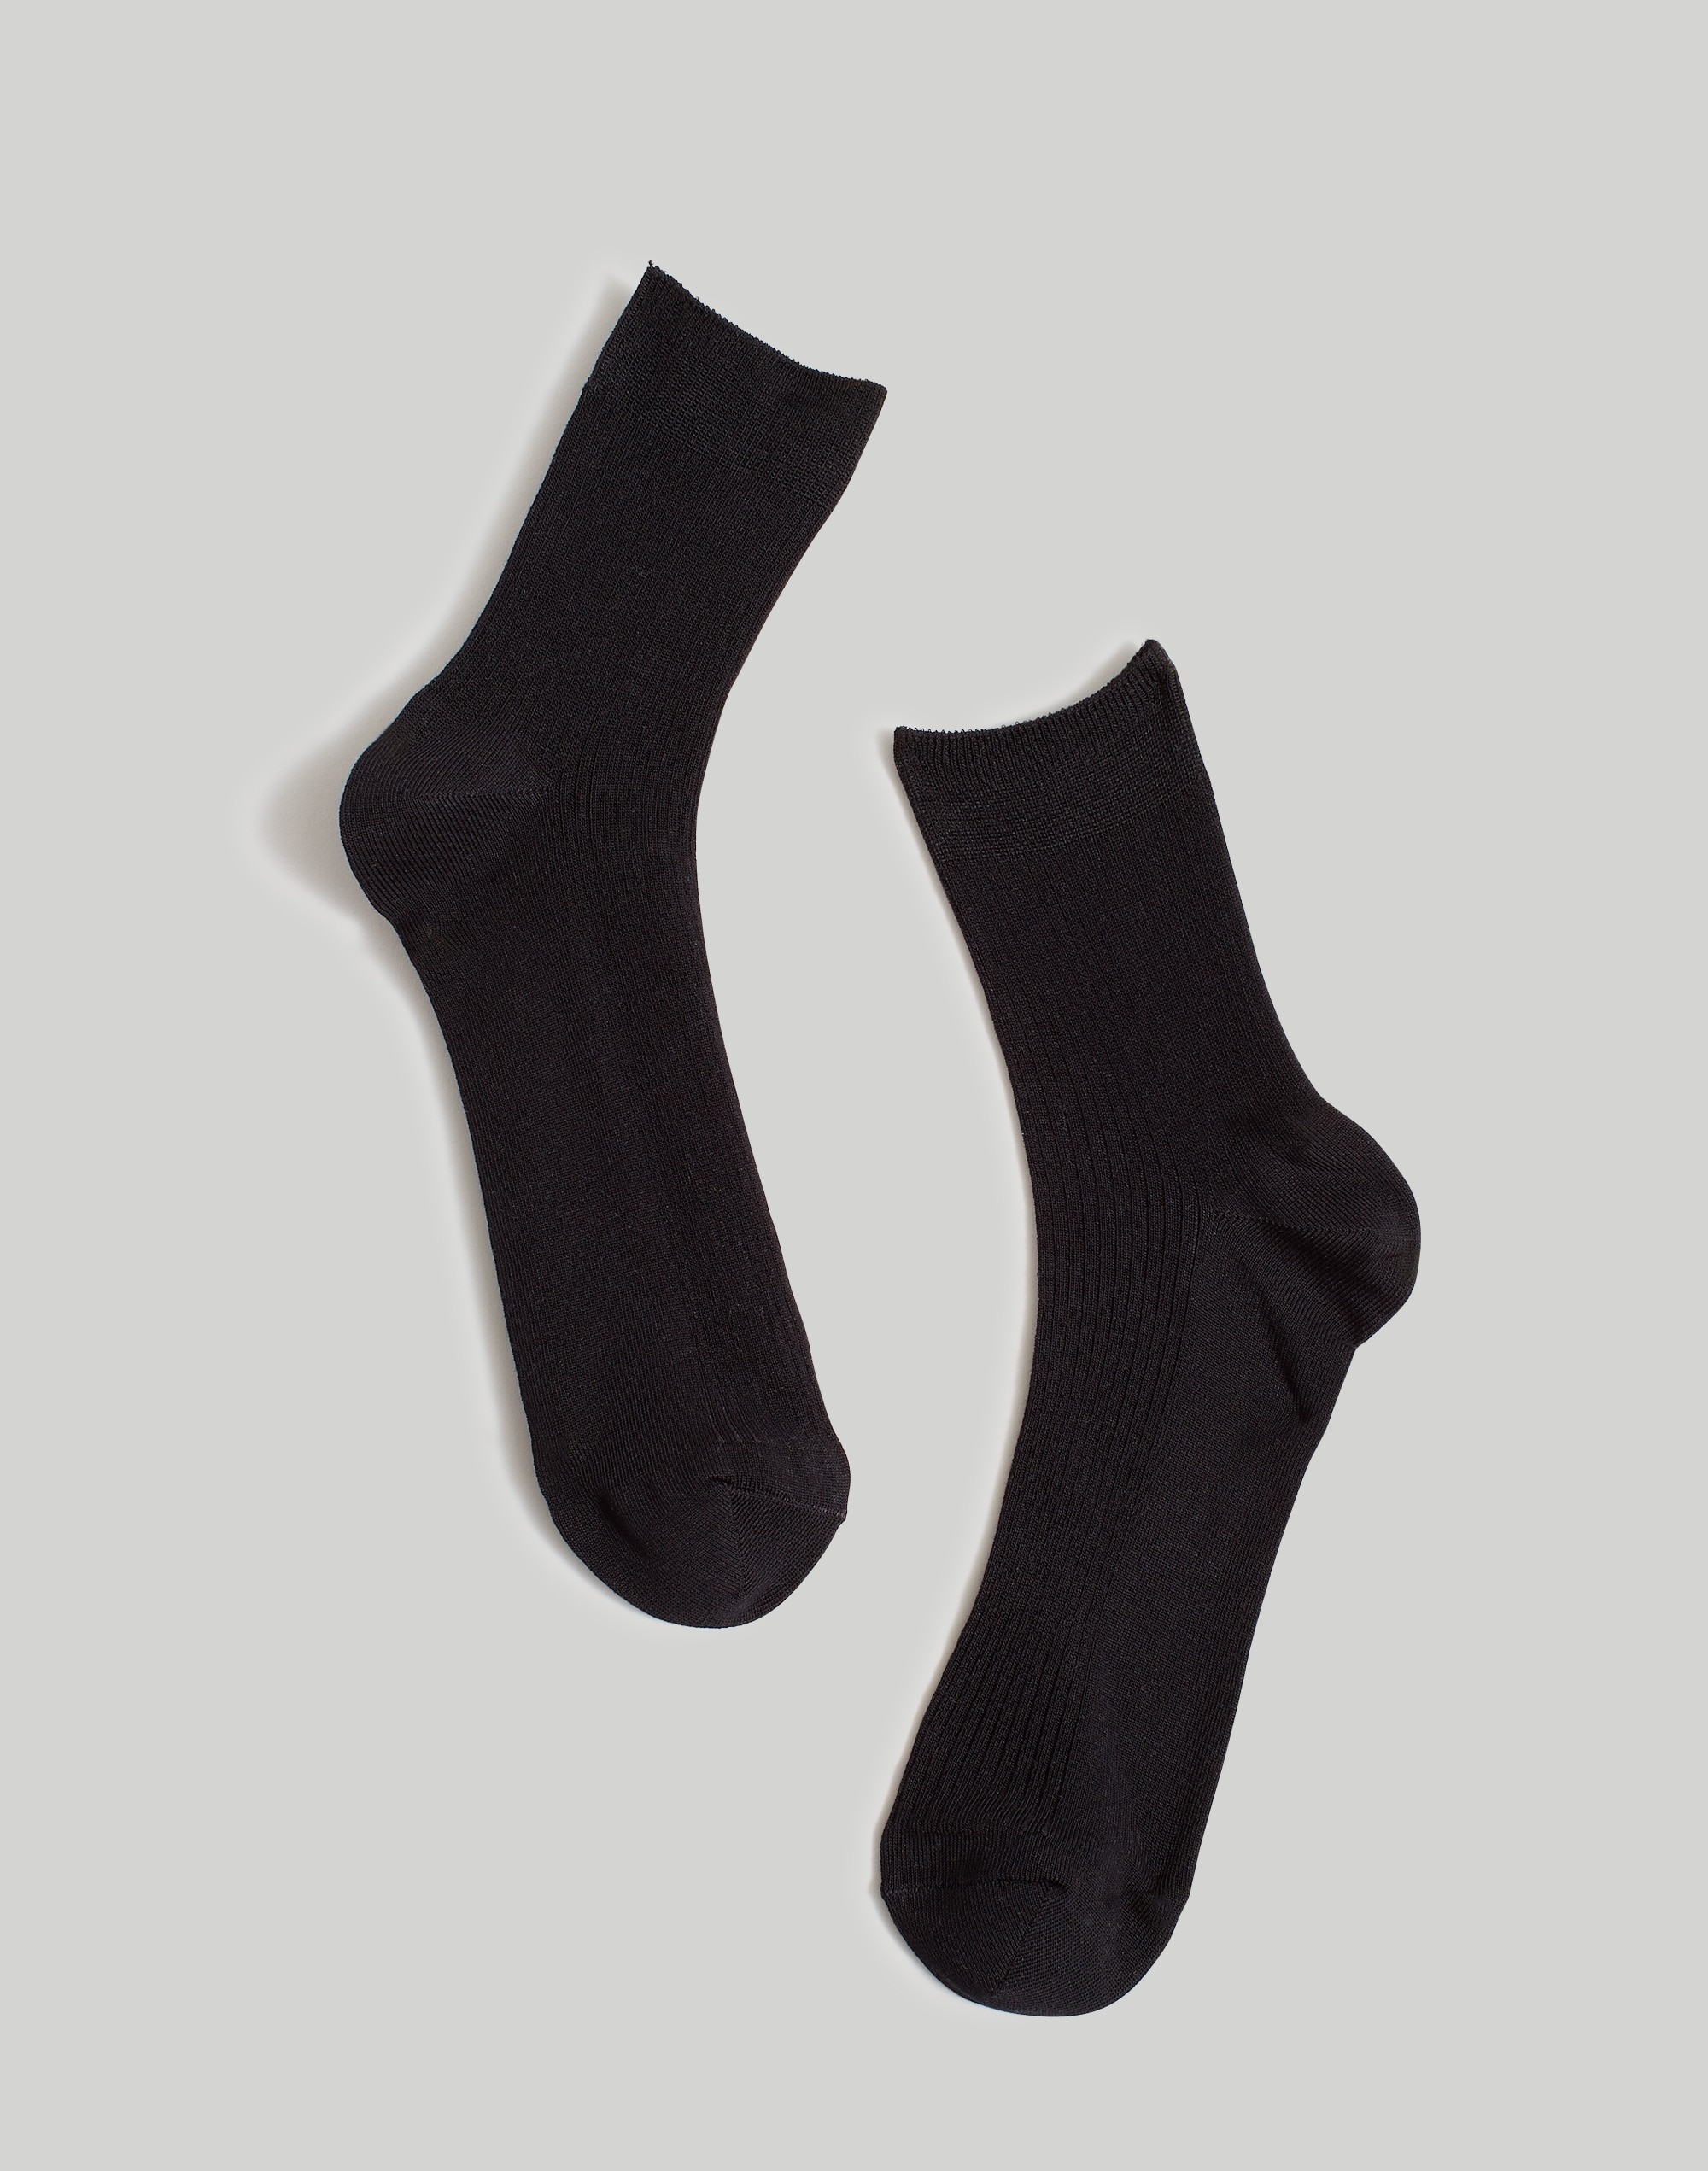 Mw Semi-sheer Ankle Socks In True Black